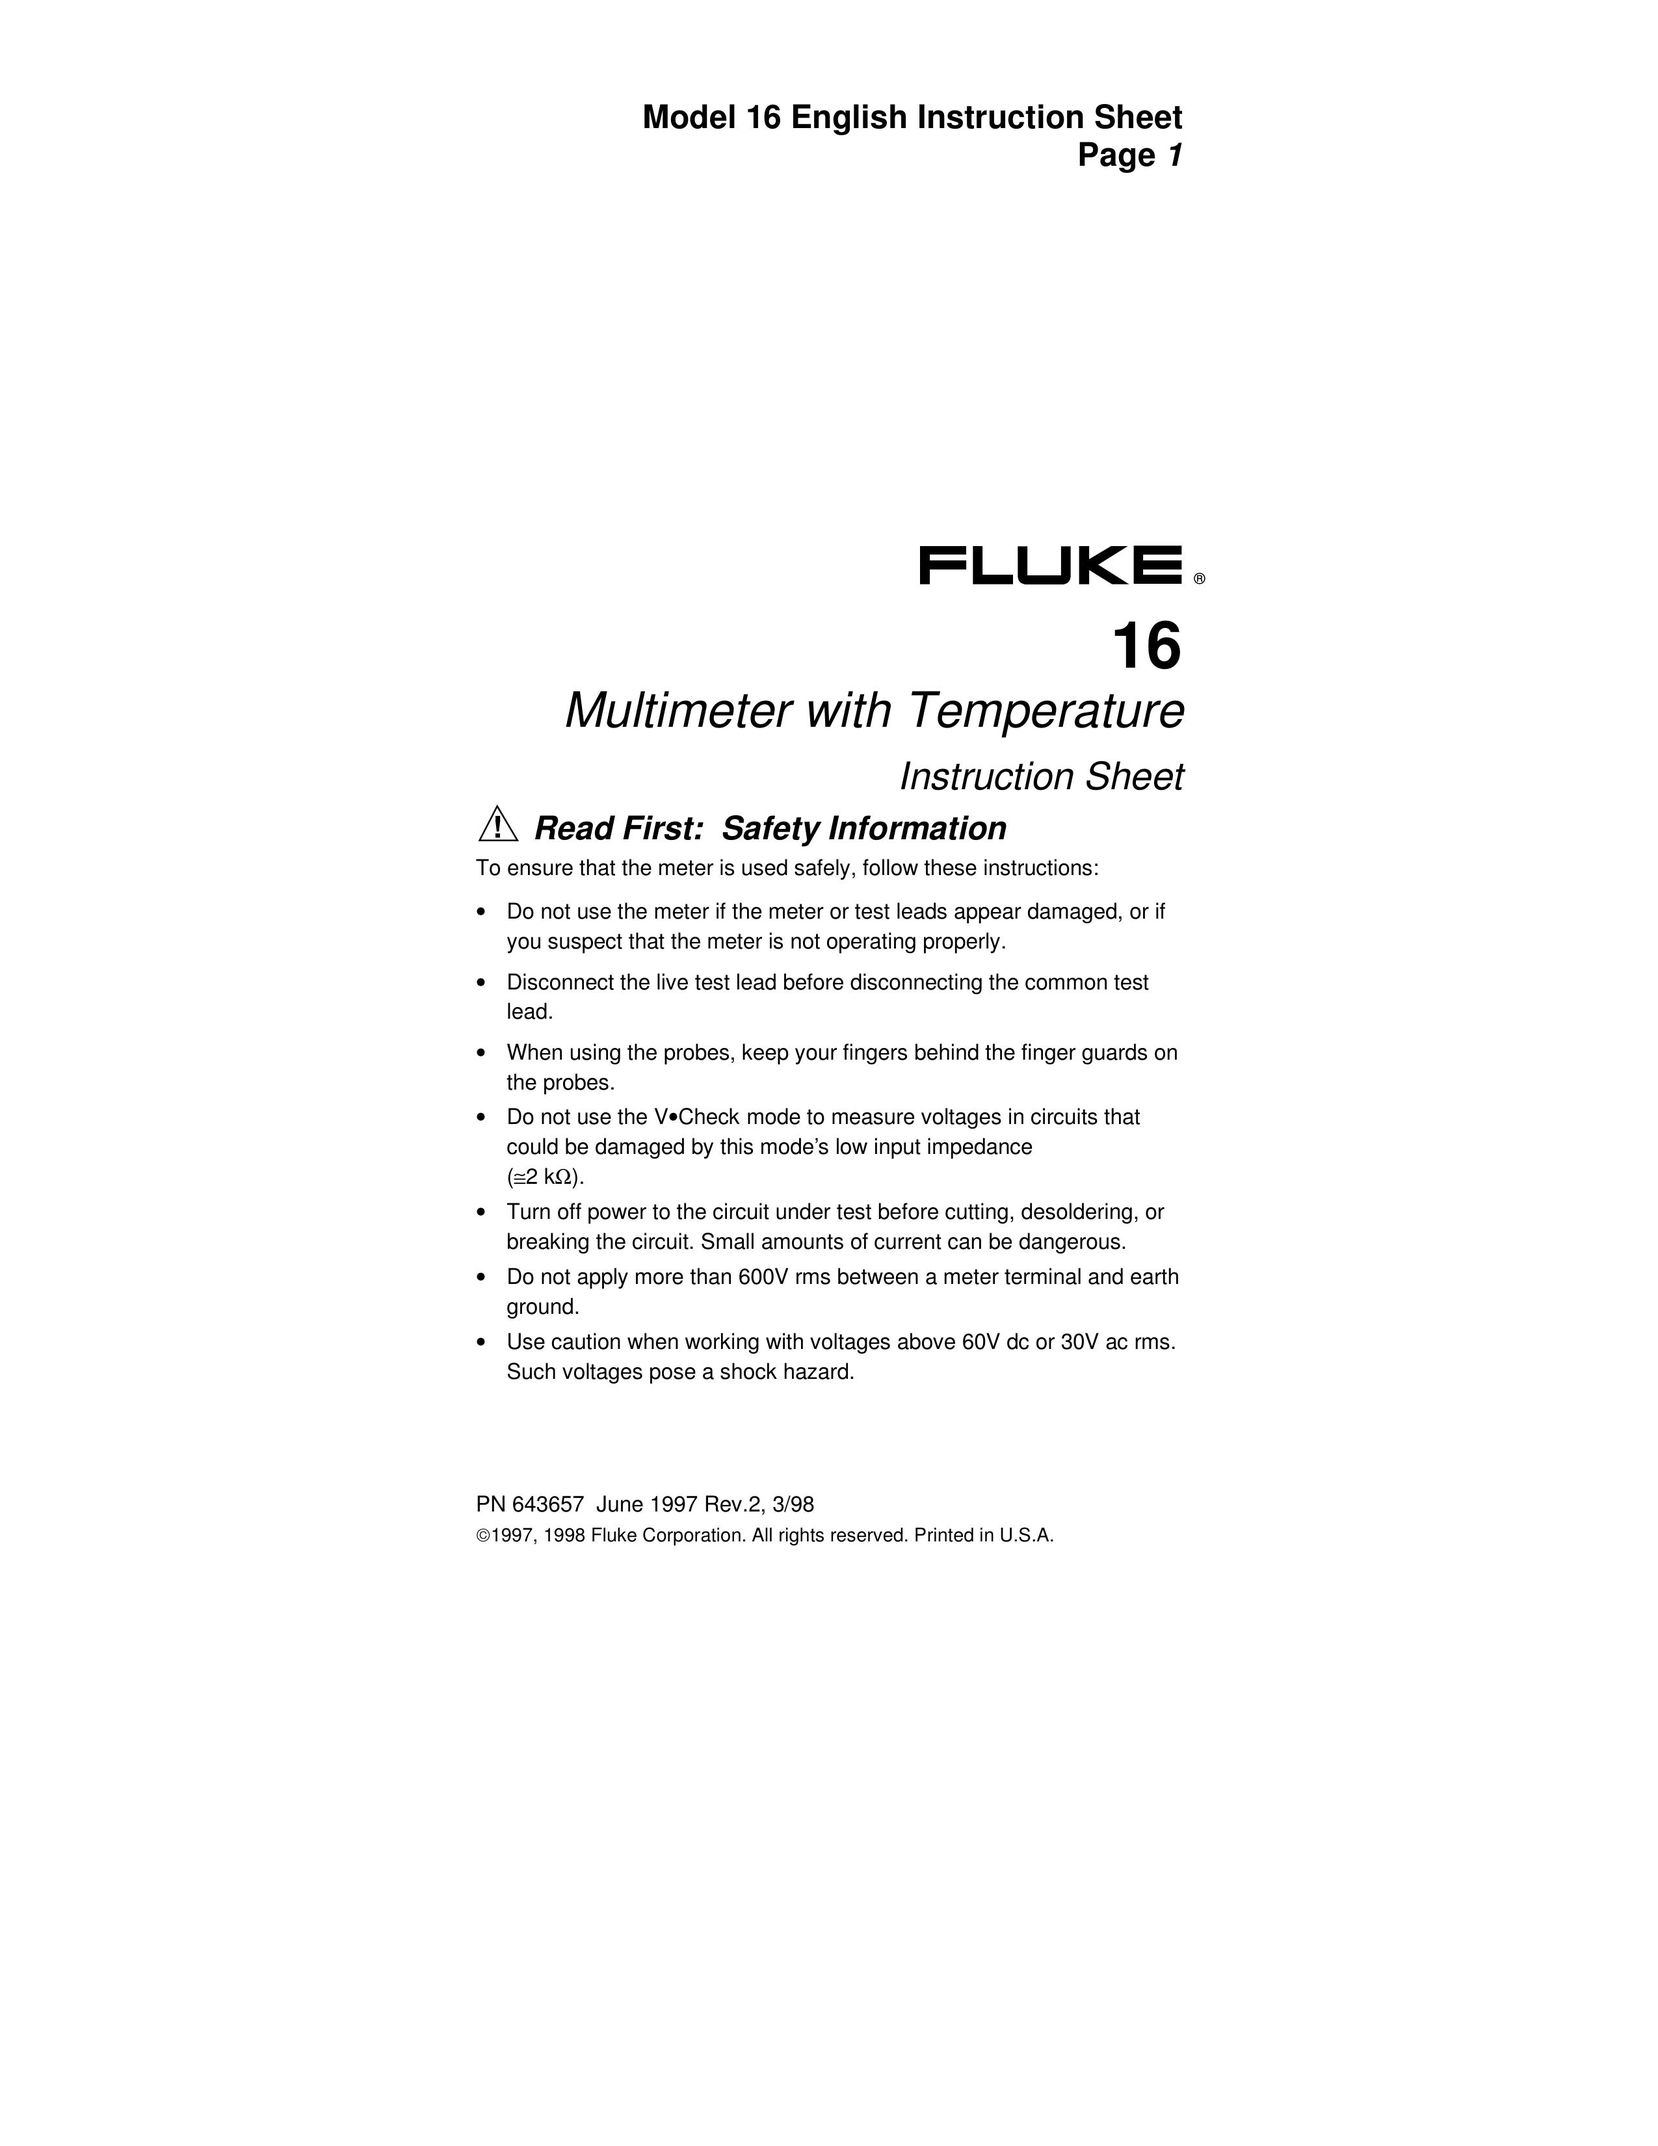 Fluke PN 643657 Welder User Manual